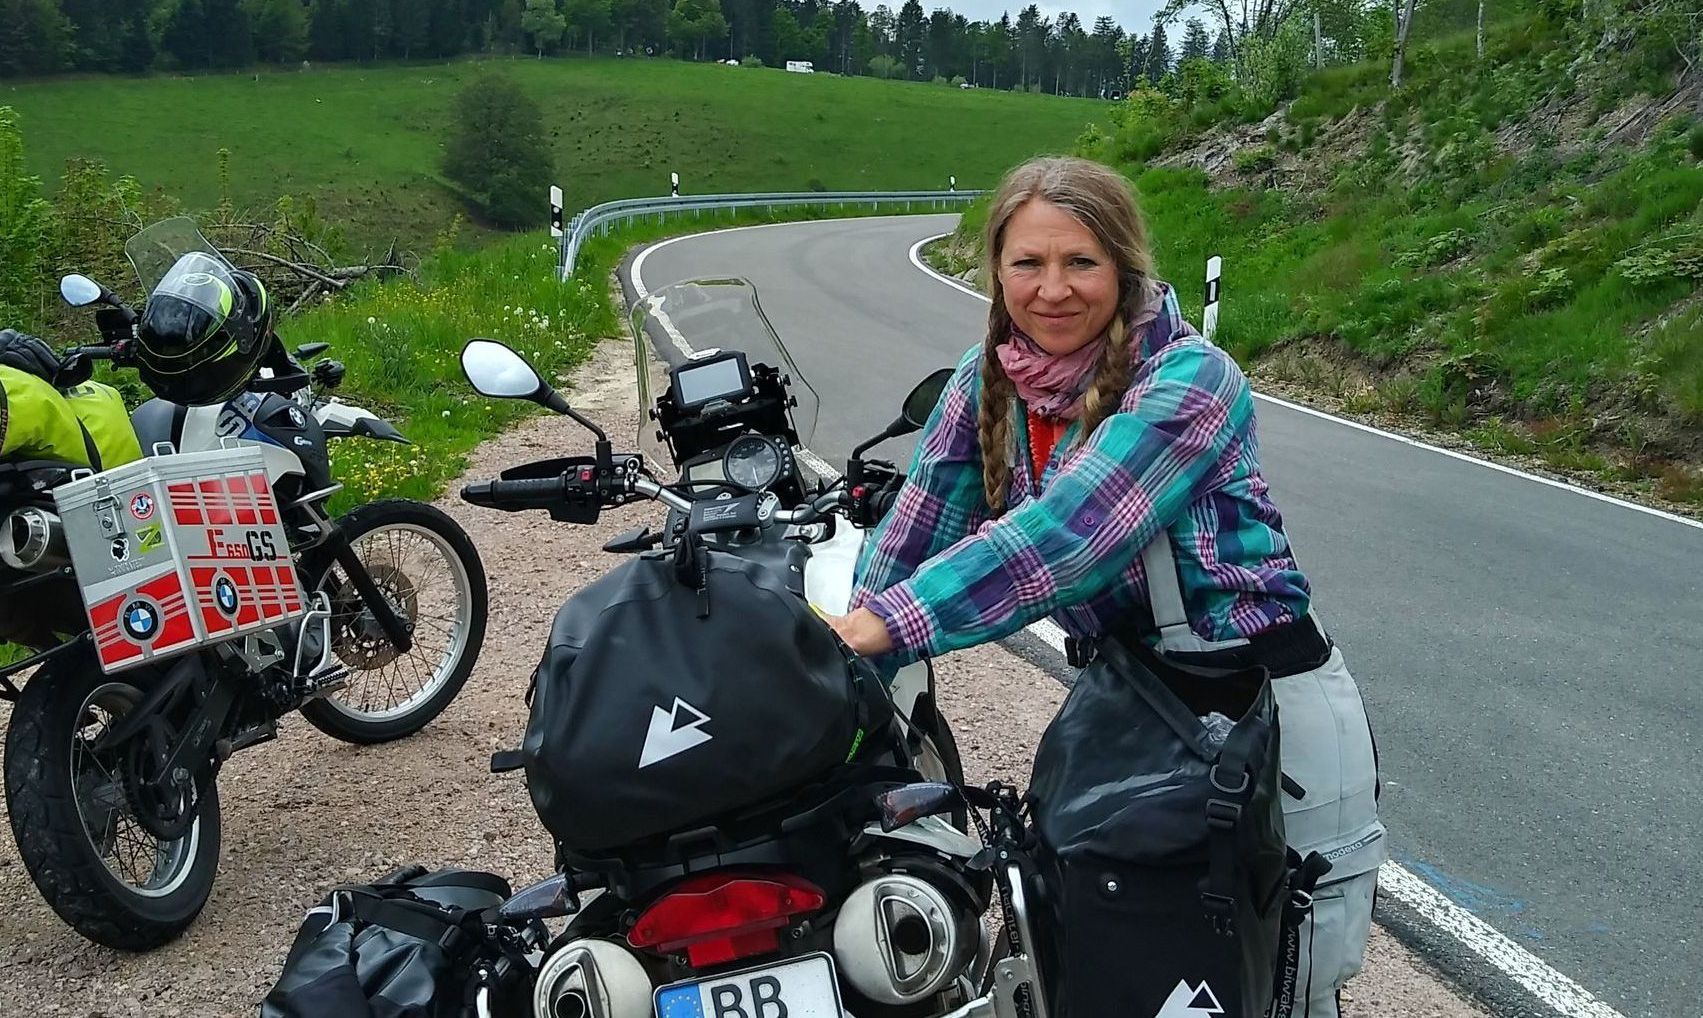 Motorradreise Veronika Miller, starke Frau, das bin ich, über Veronika Miller